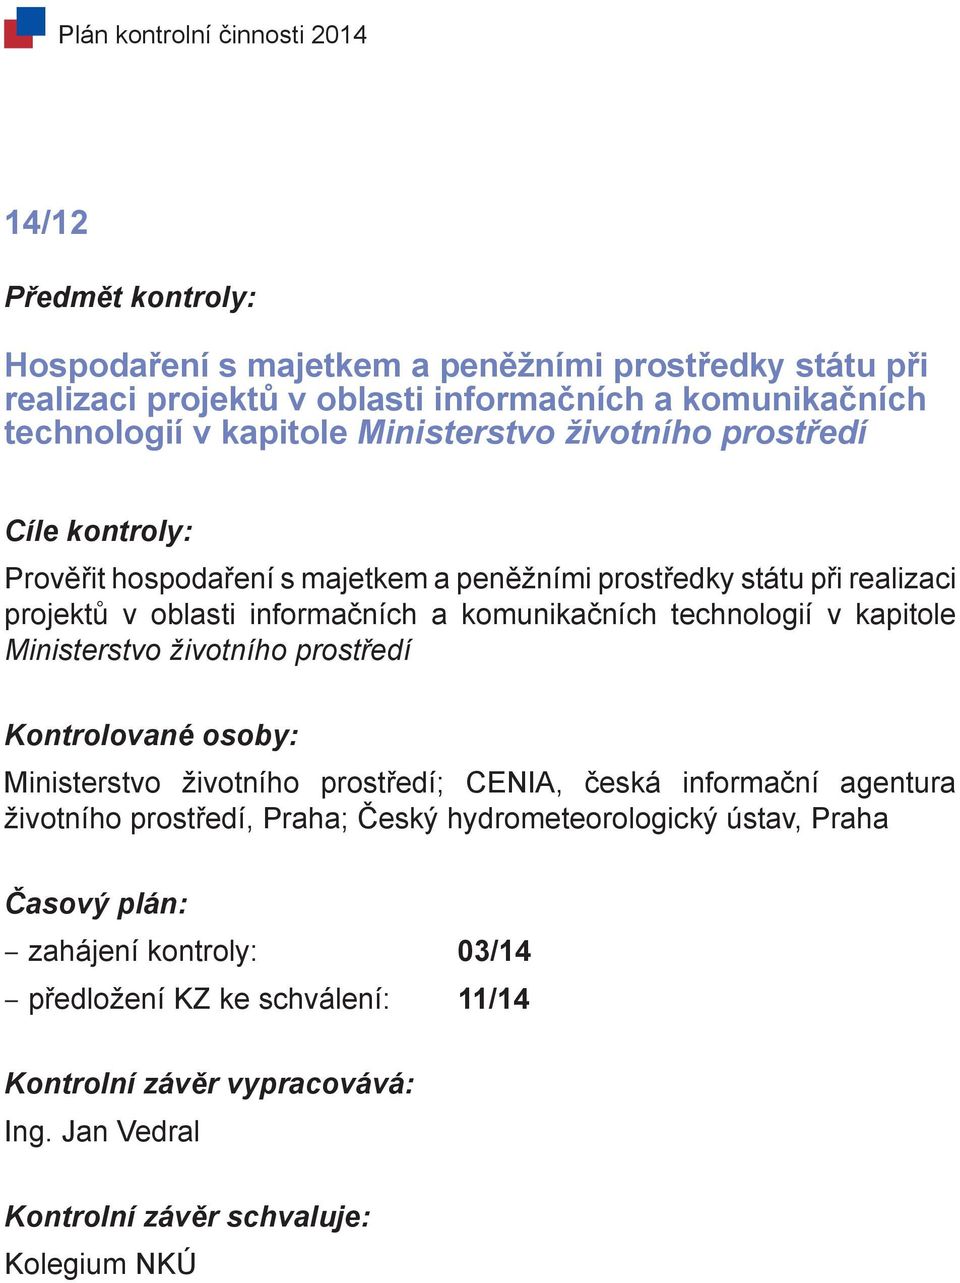 informačních a komunikačních technologií v kapitole Ministerstvo životního prostředí Ministerstvo životního prostředí; CENIA, česká